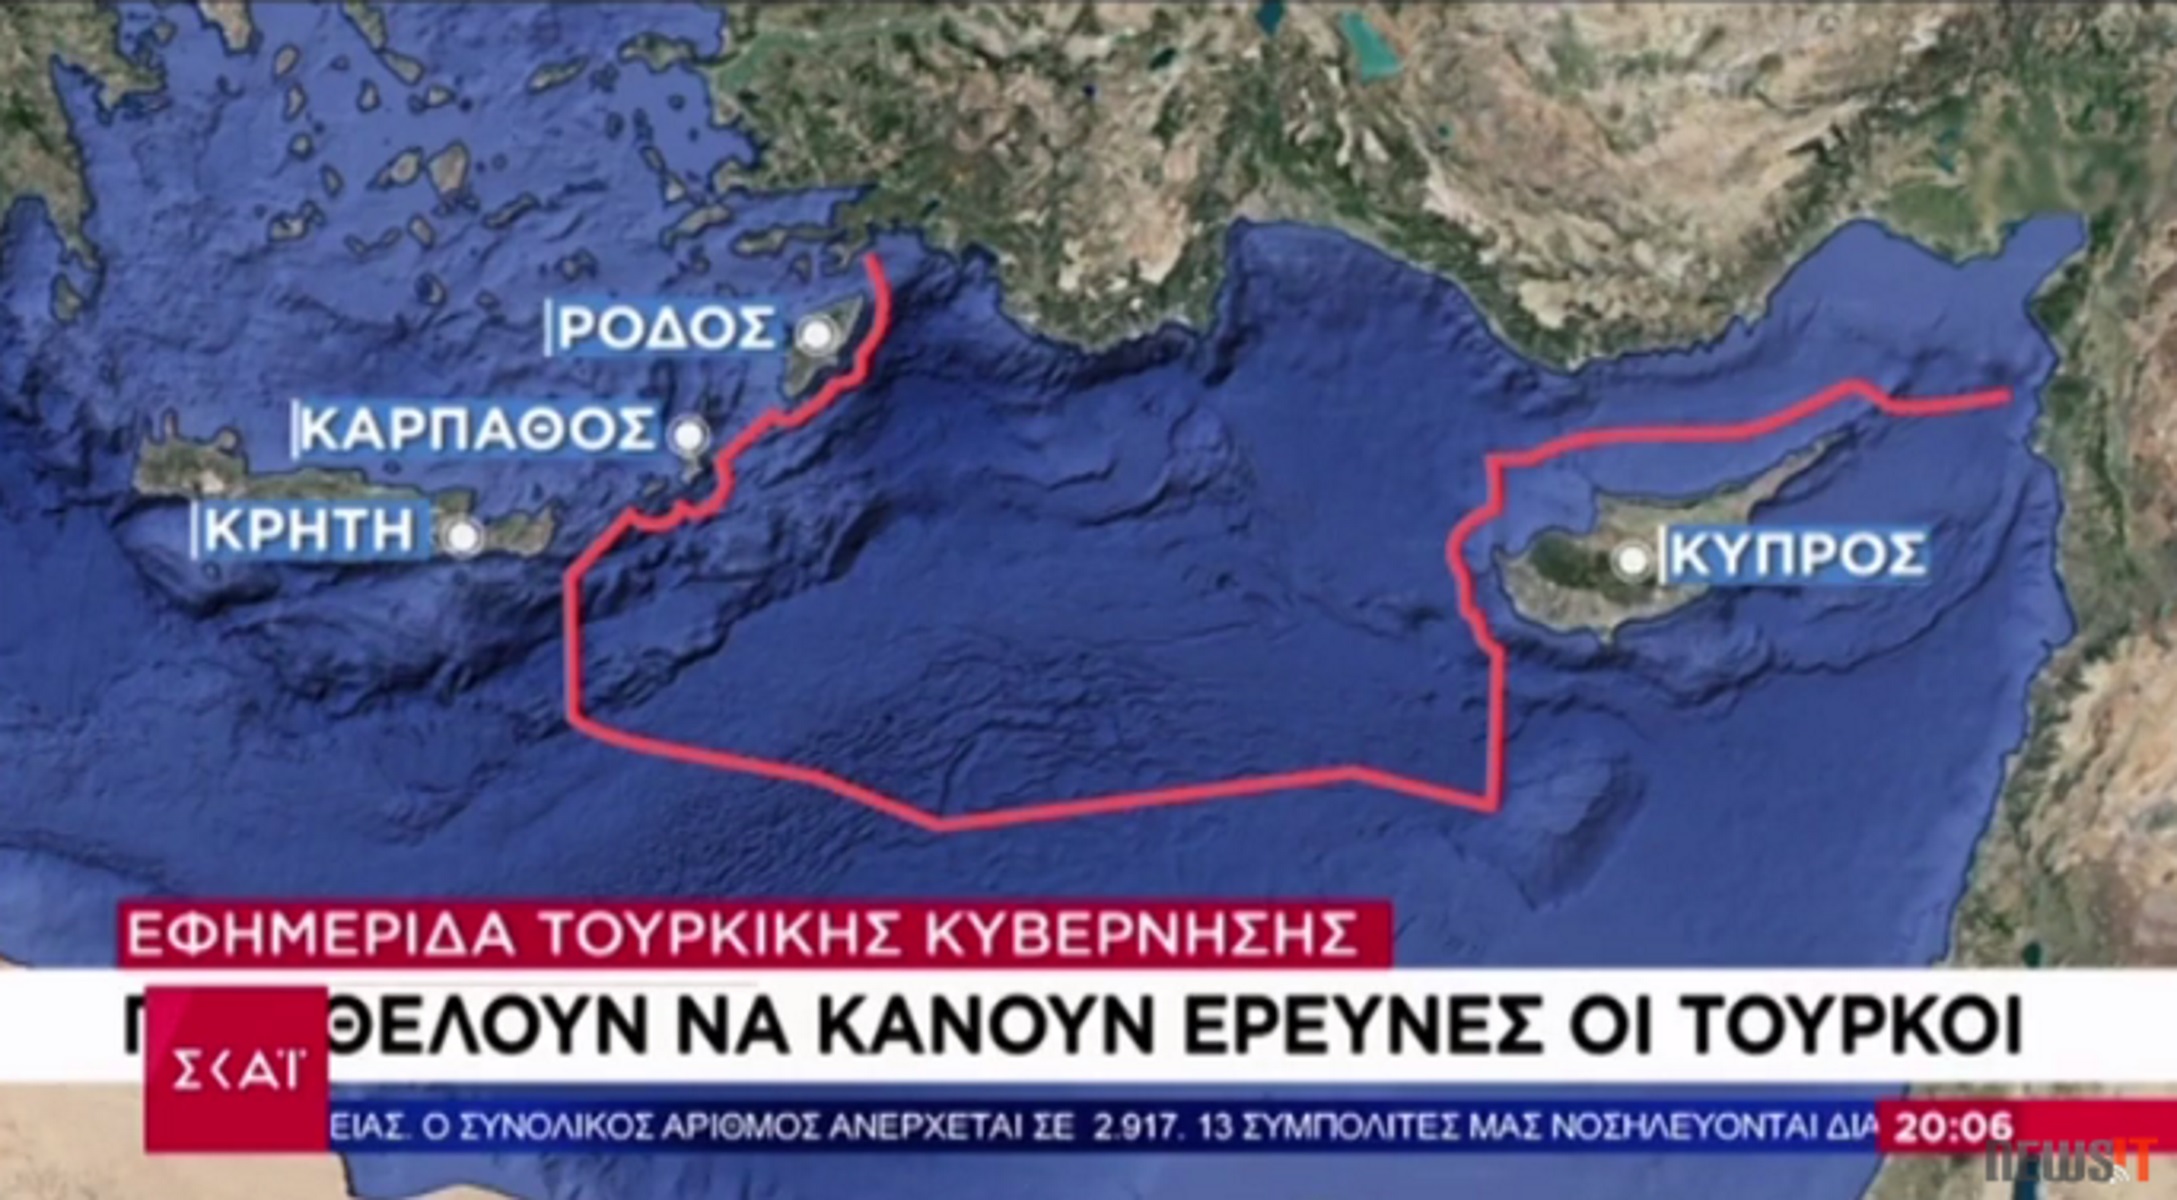 Ακραία τουρκική πρόκληση: Αίτημα για έρευνες κοντά σε Ρόδο, Κάρπαθο και Κρήτη – Δεν αναγνωρίζουν ελληνικές υφαλοκρηπίδες